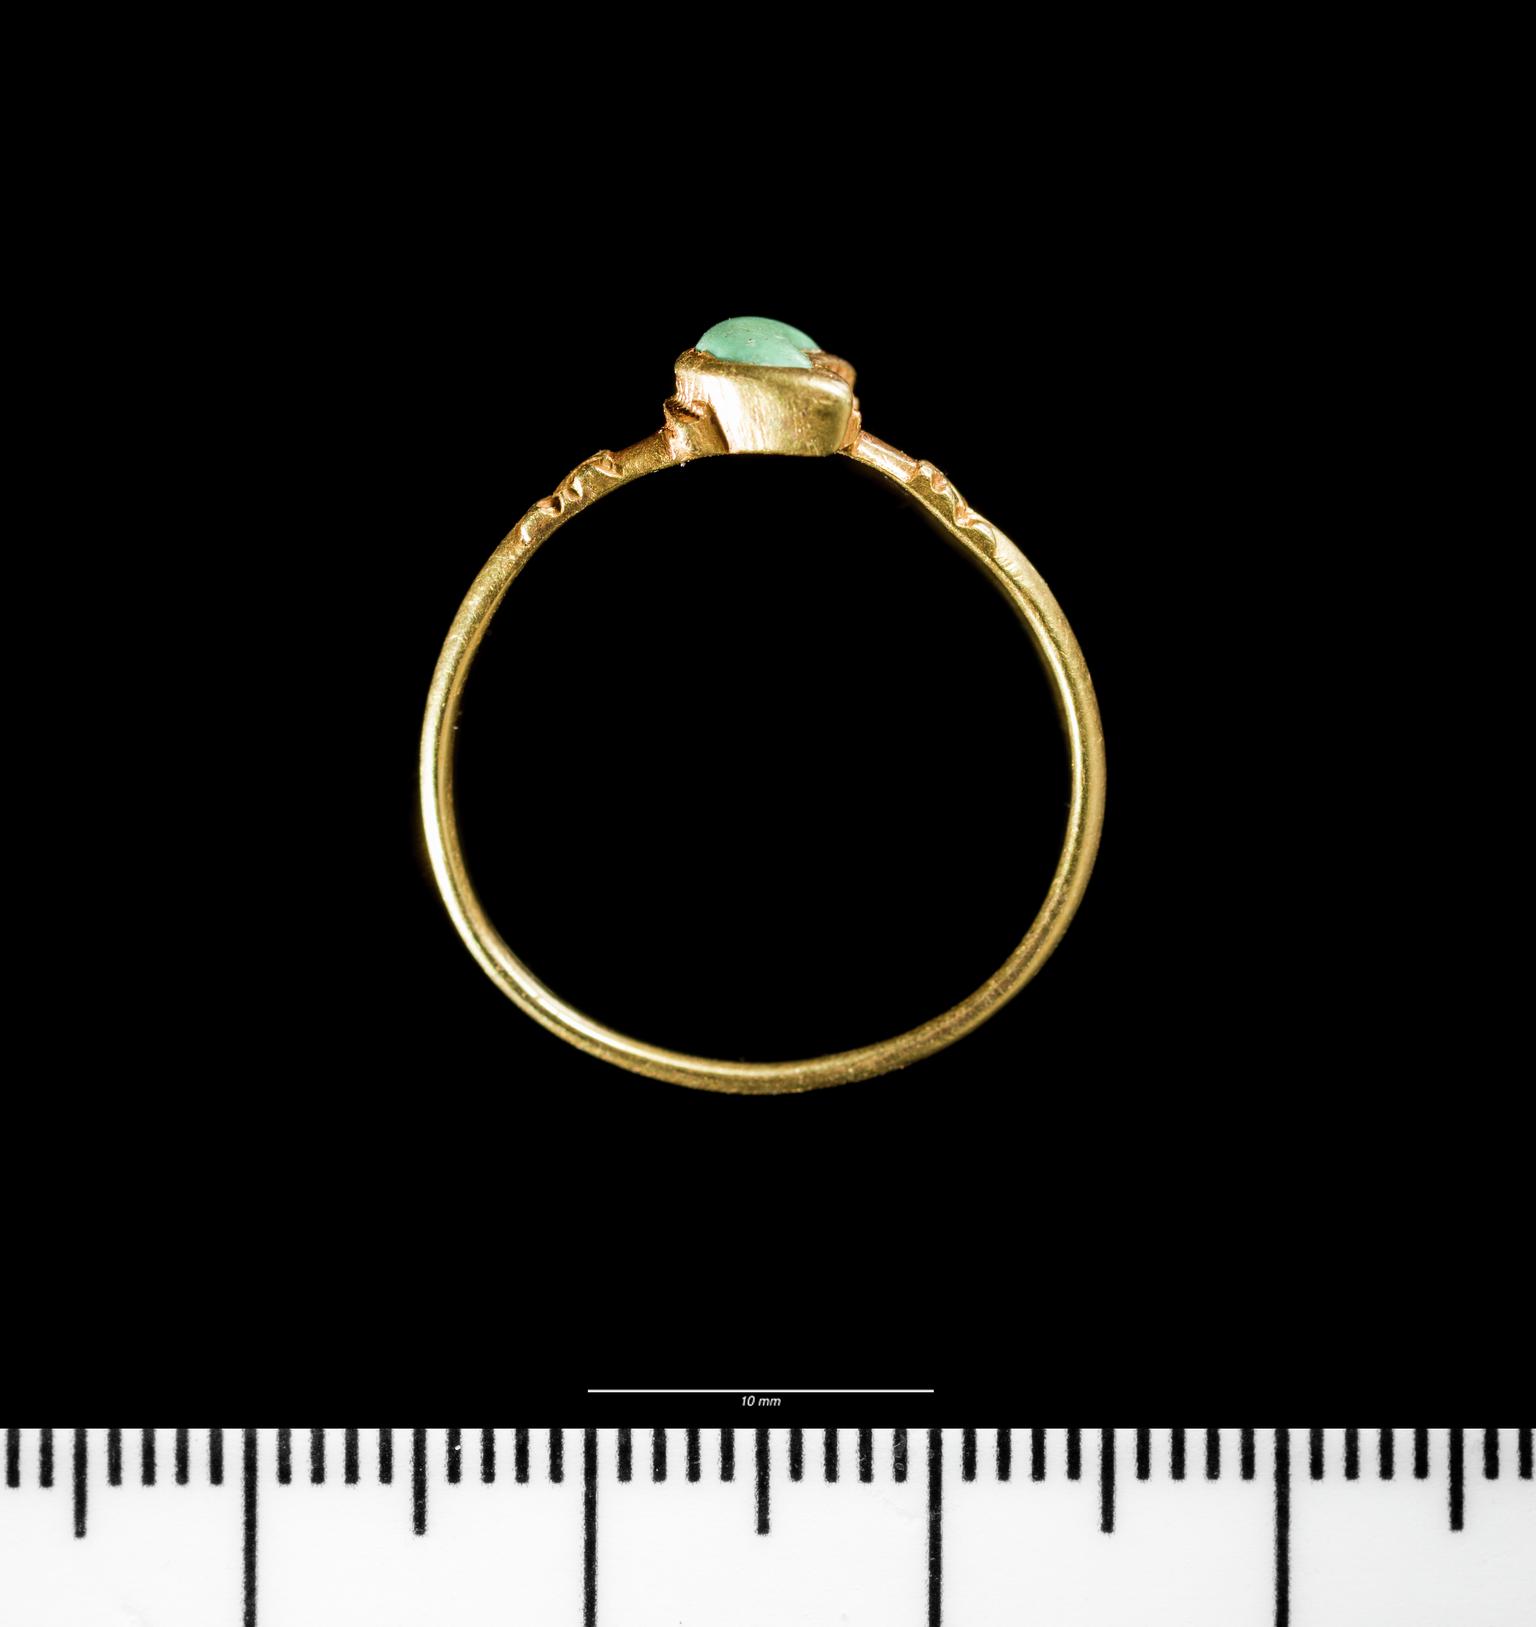 Medieval gold finger ring